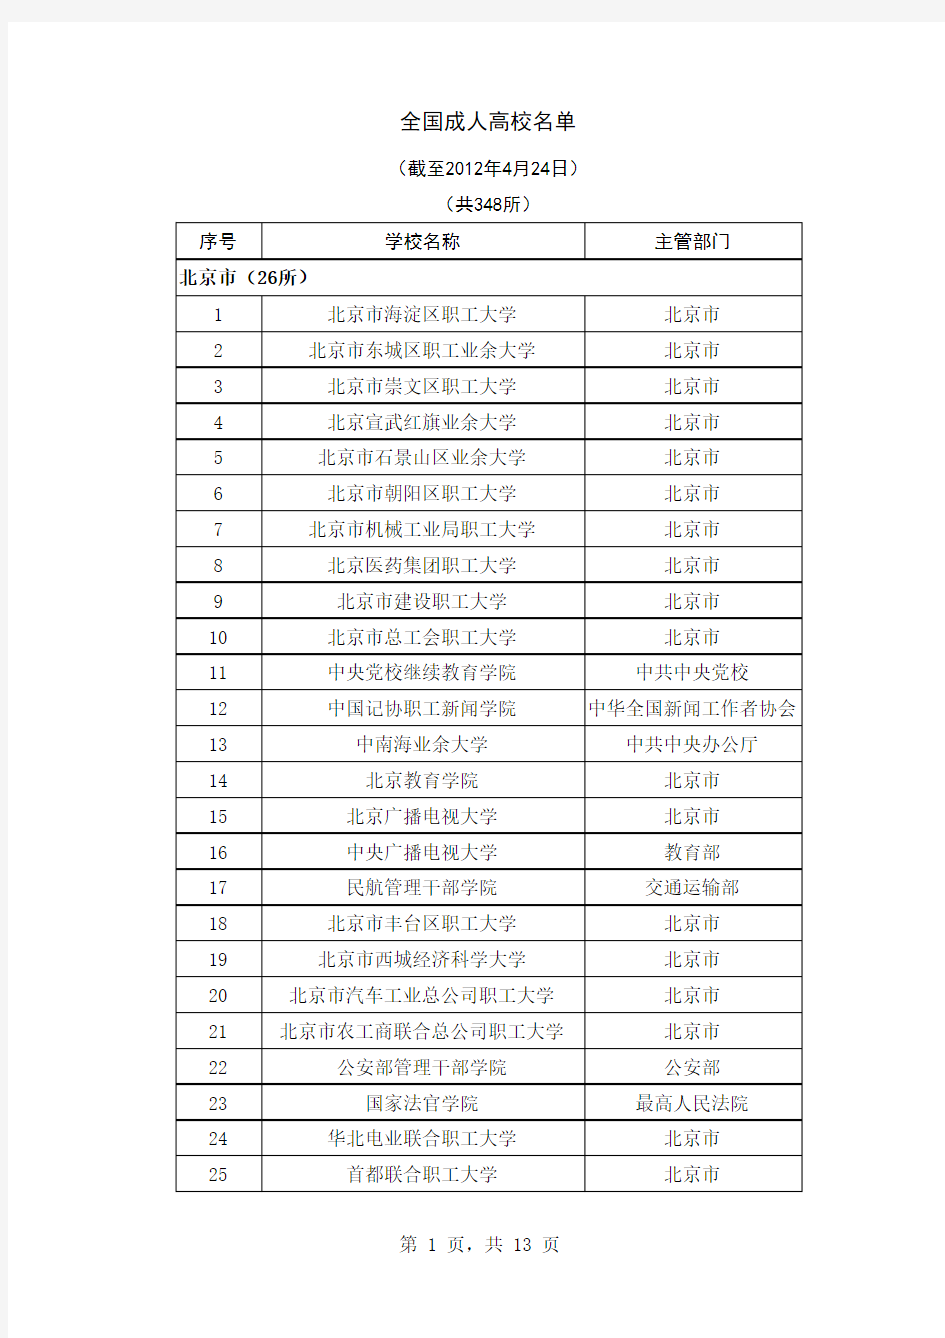 【最新官方版】全国成人高校名单(截至2012年4月24日)